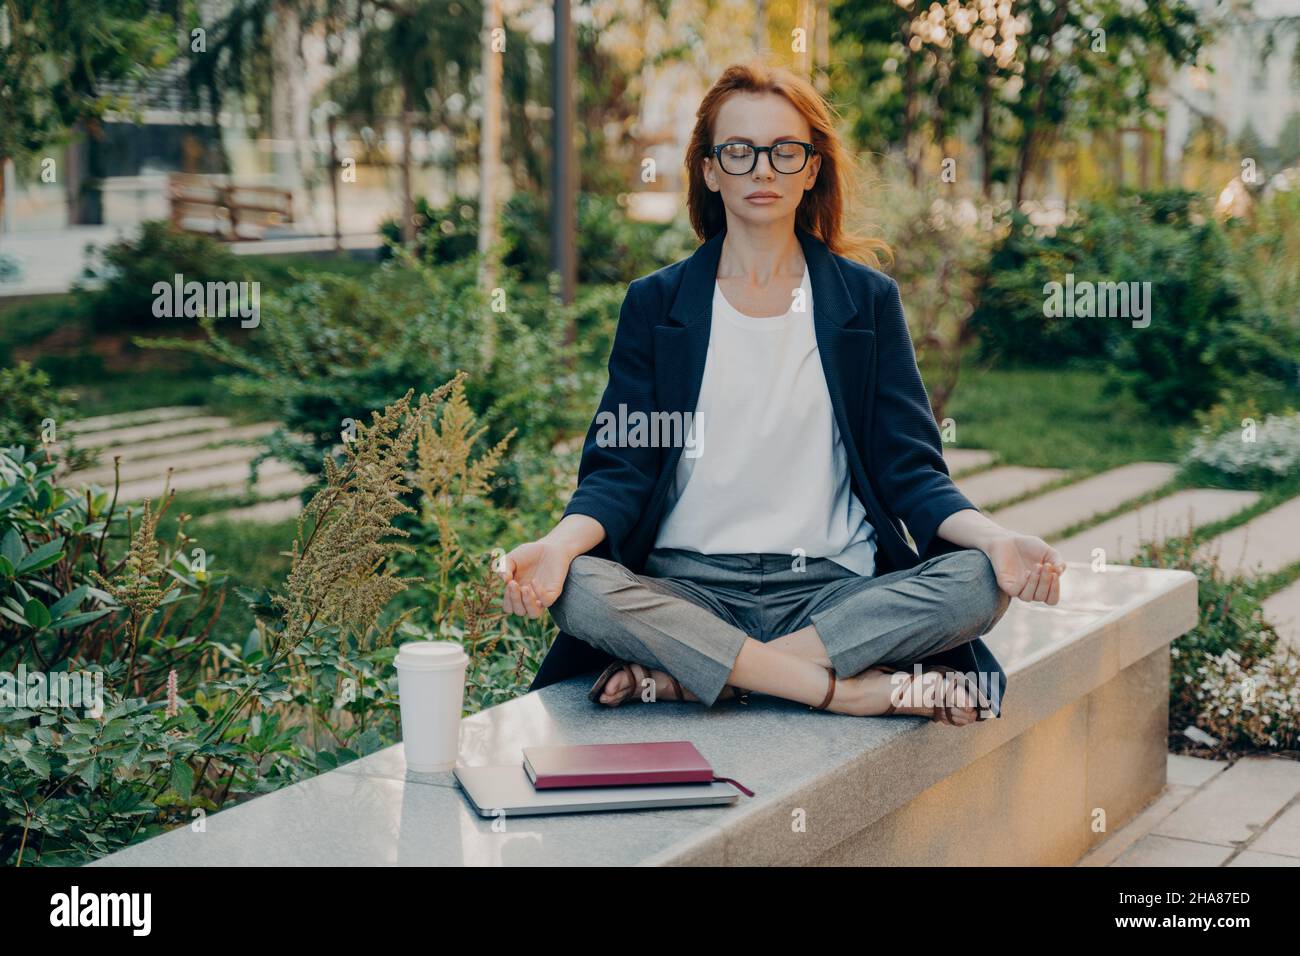 Realxed redhead donna fa yoga fuori al parco si siede in lotus posa meditati all'aperto Foto Stock